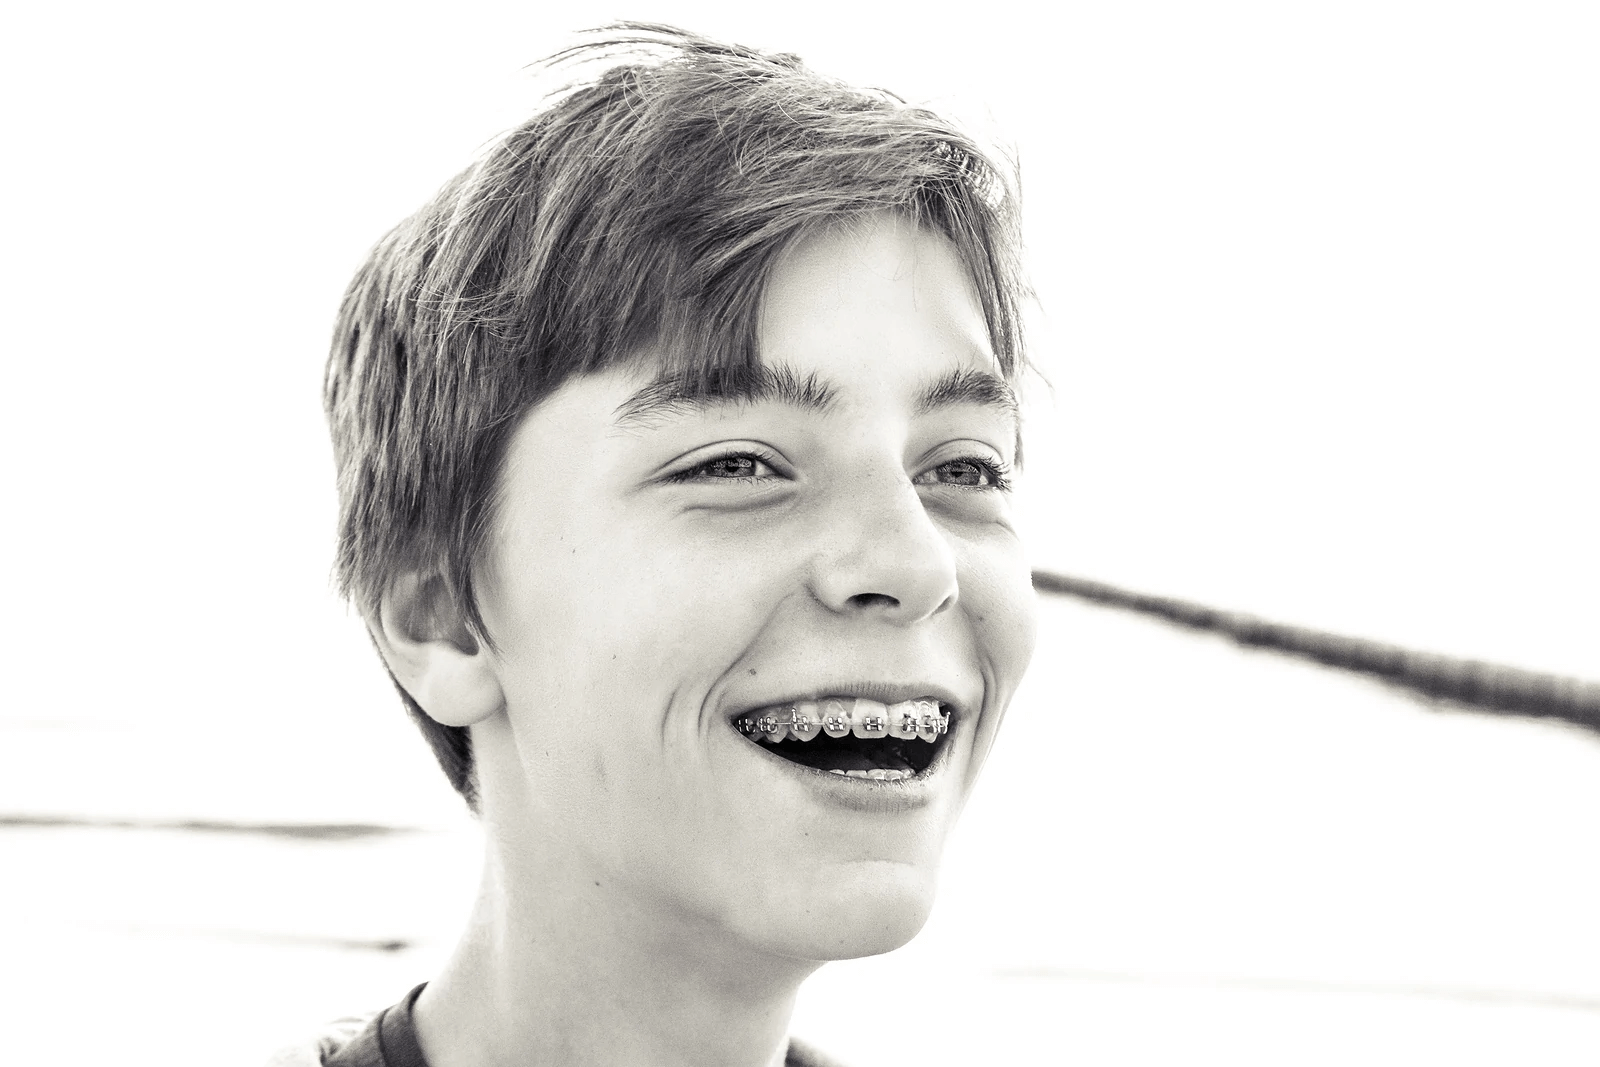 chłopak z aparatem ortodontycznym